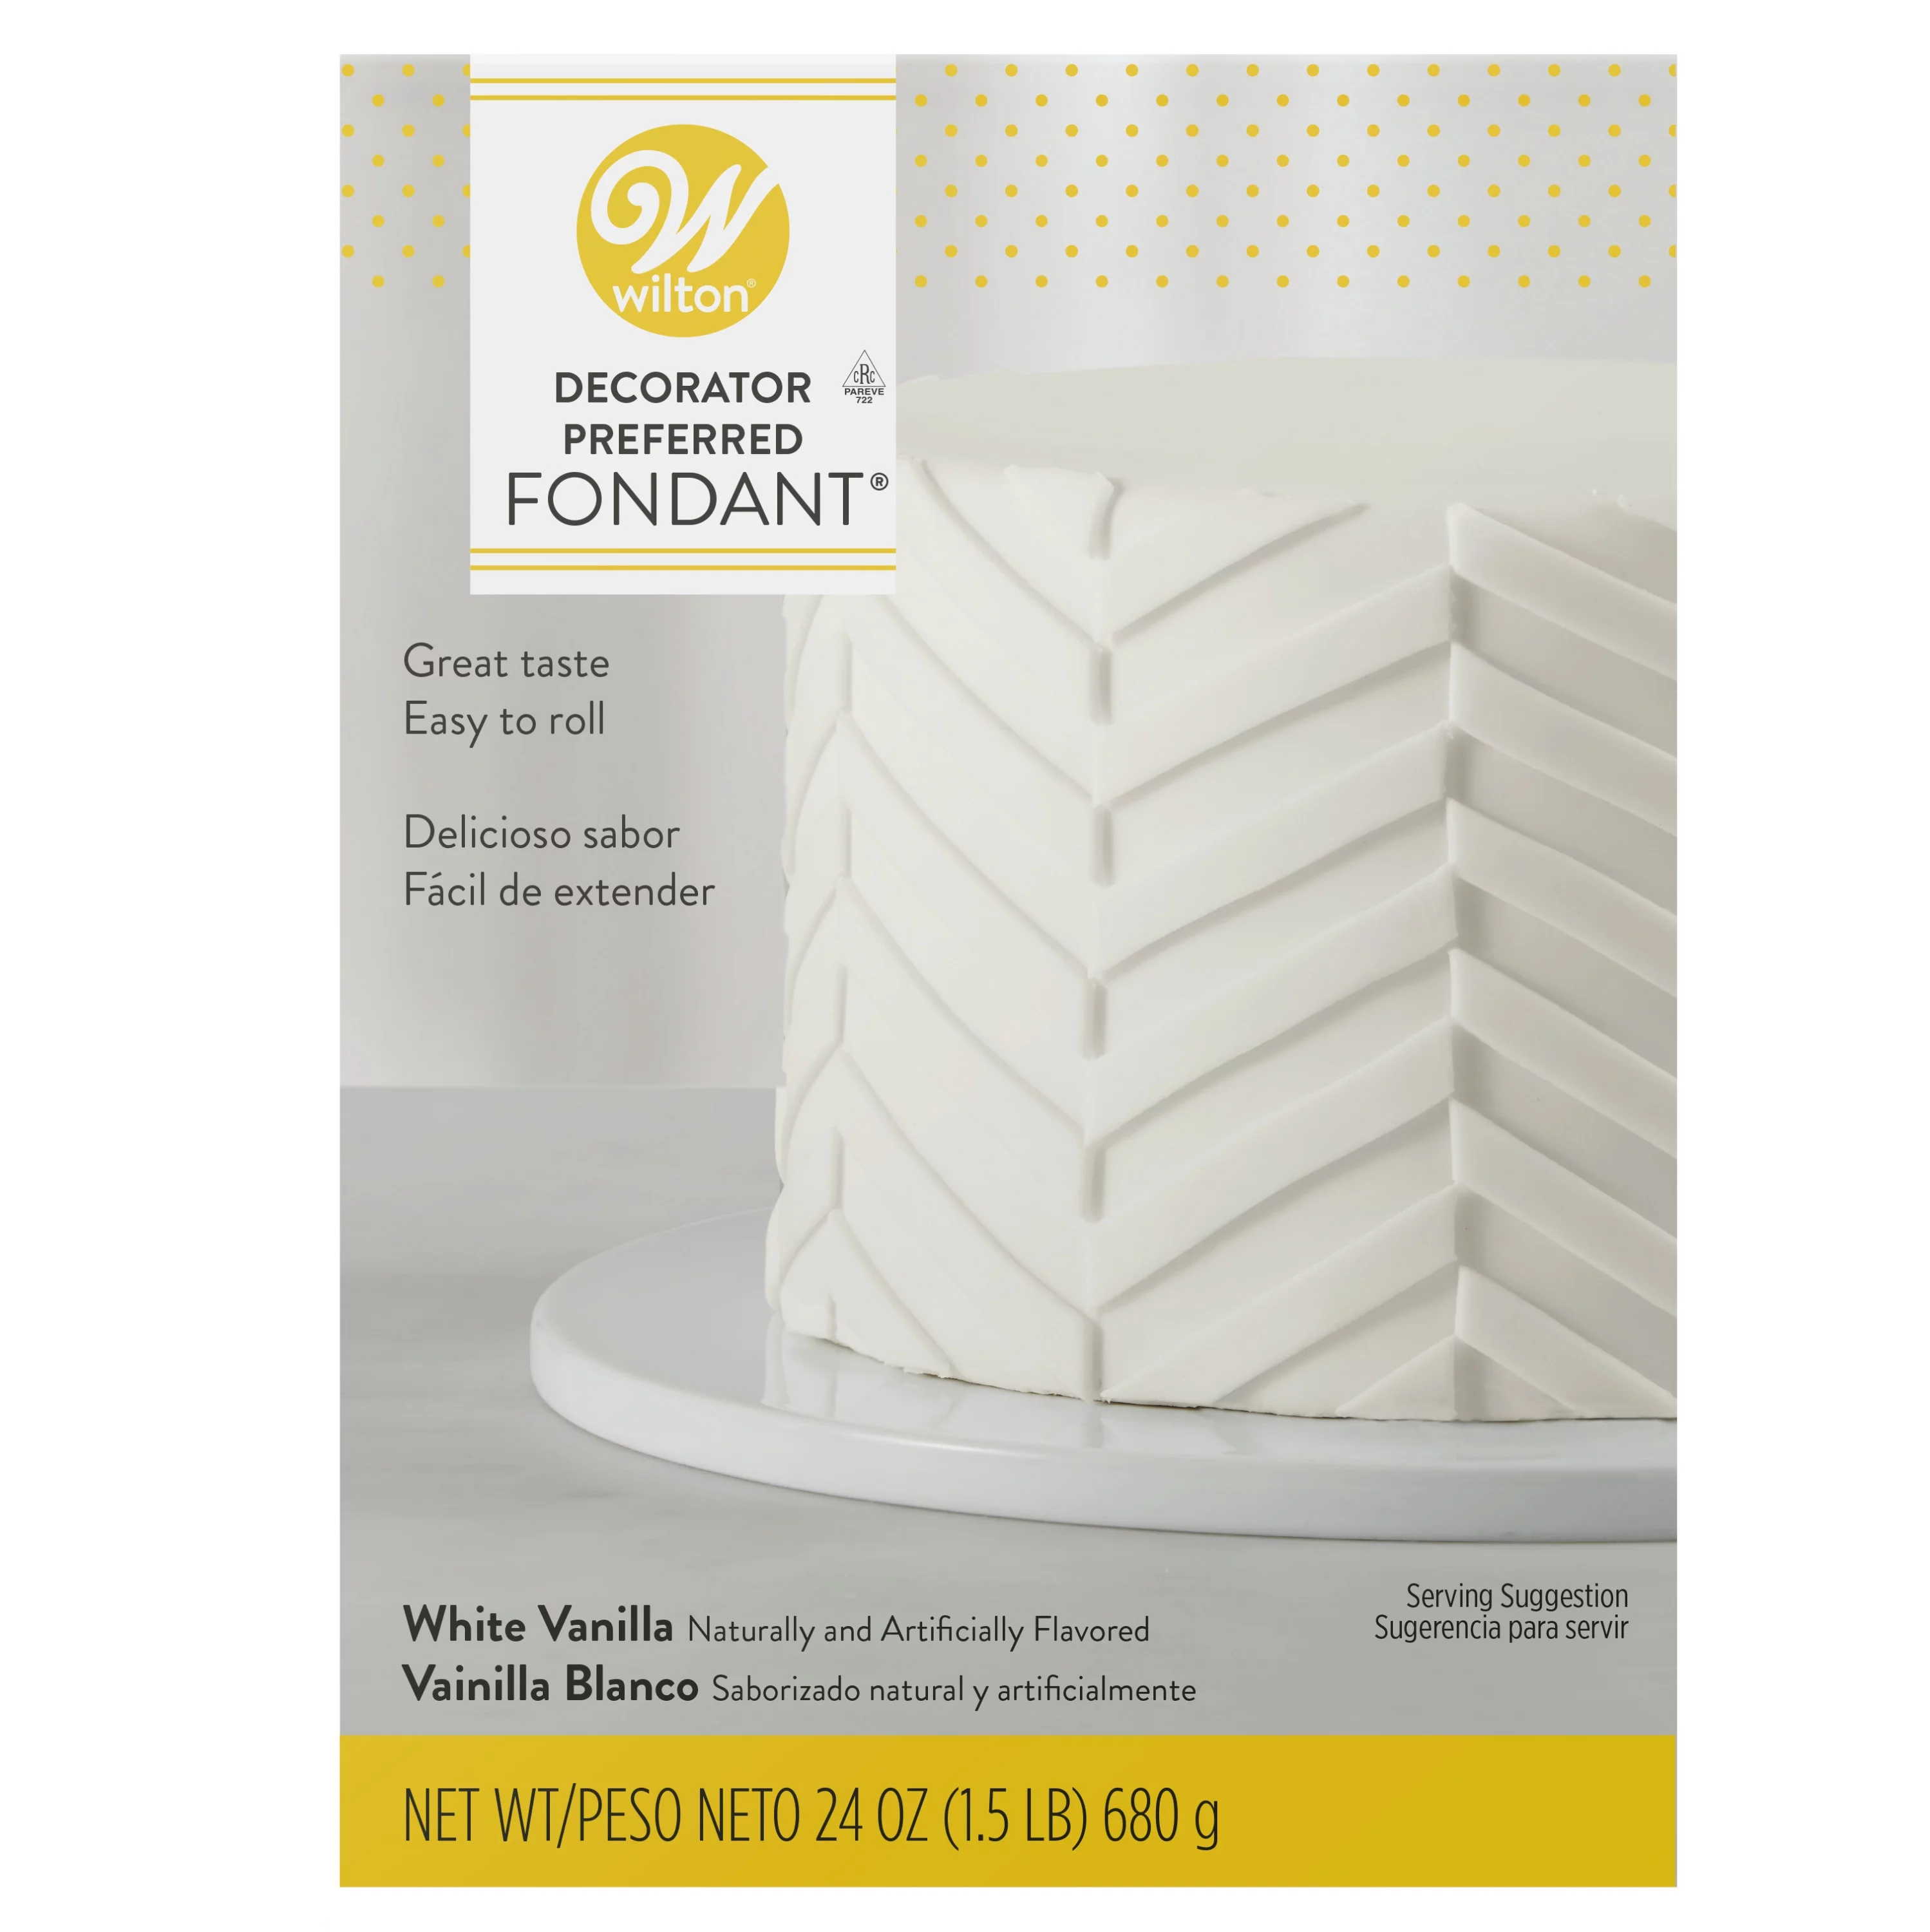 Wilton Decorator Preferred White Fondant, Vanilla Flavored Fondant Icing, 24 oz